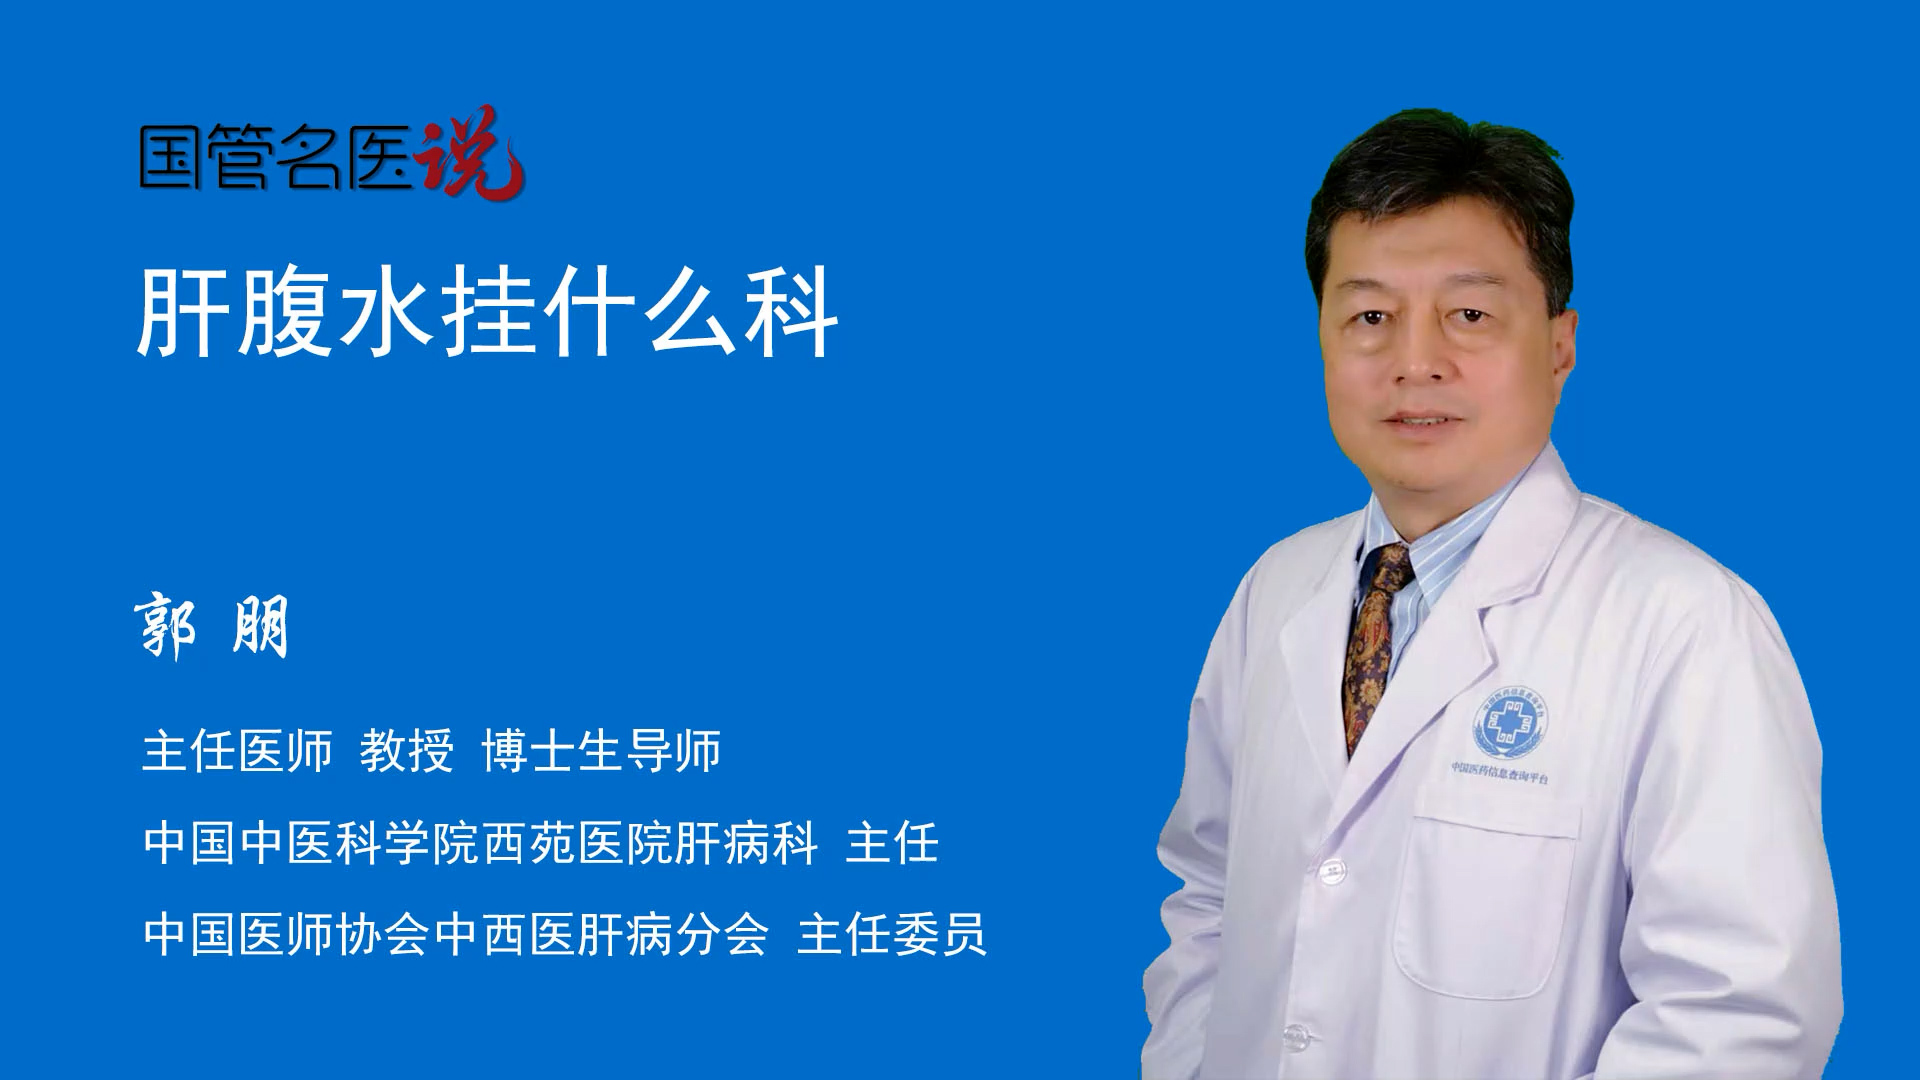 关于中国中医科学院西苑医院患者须知跑腿代挂联系的信息